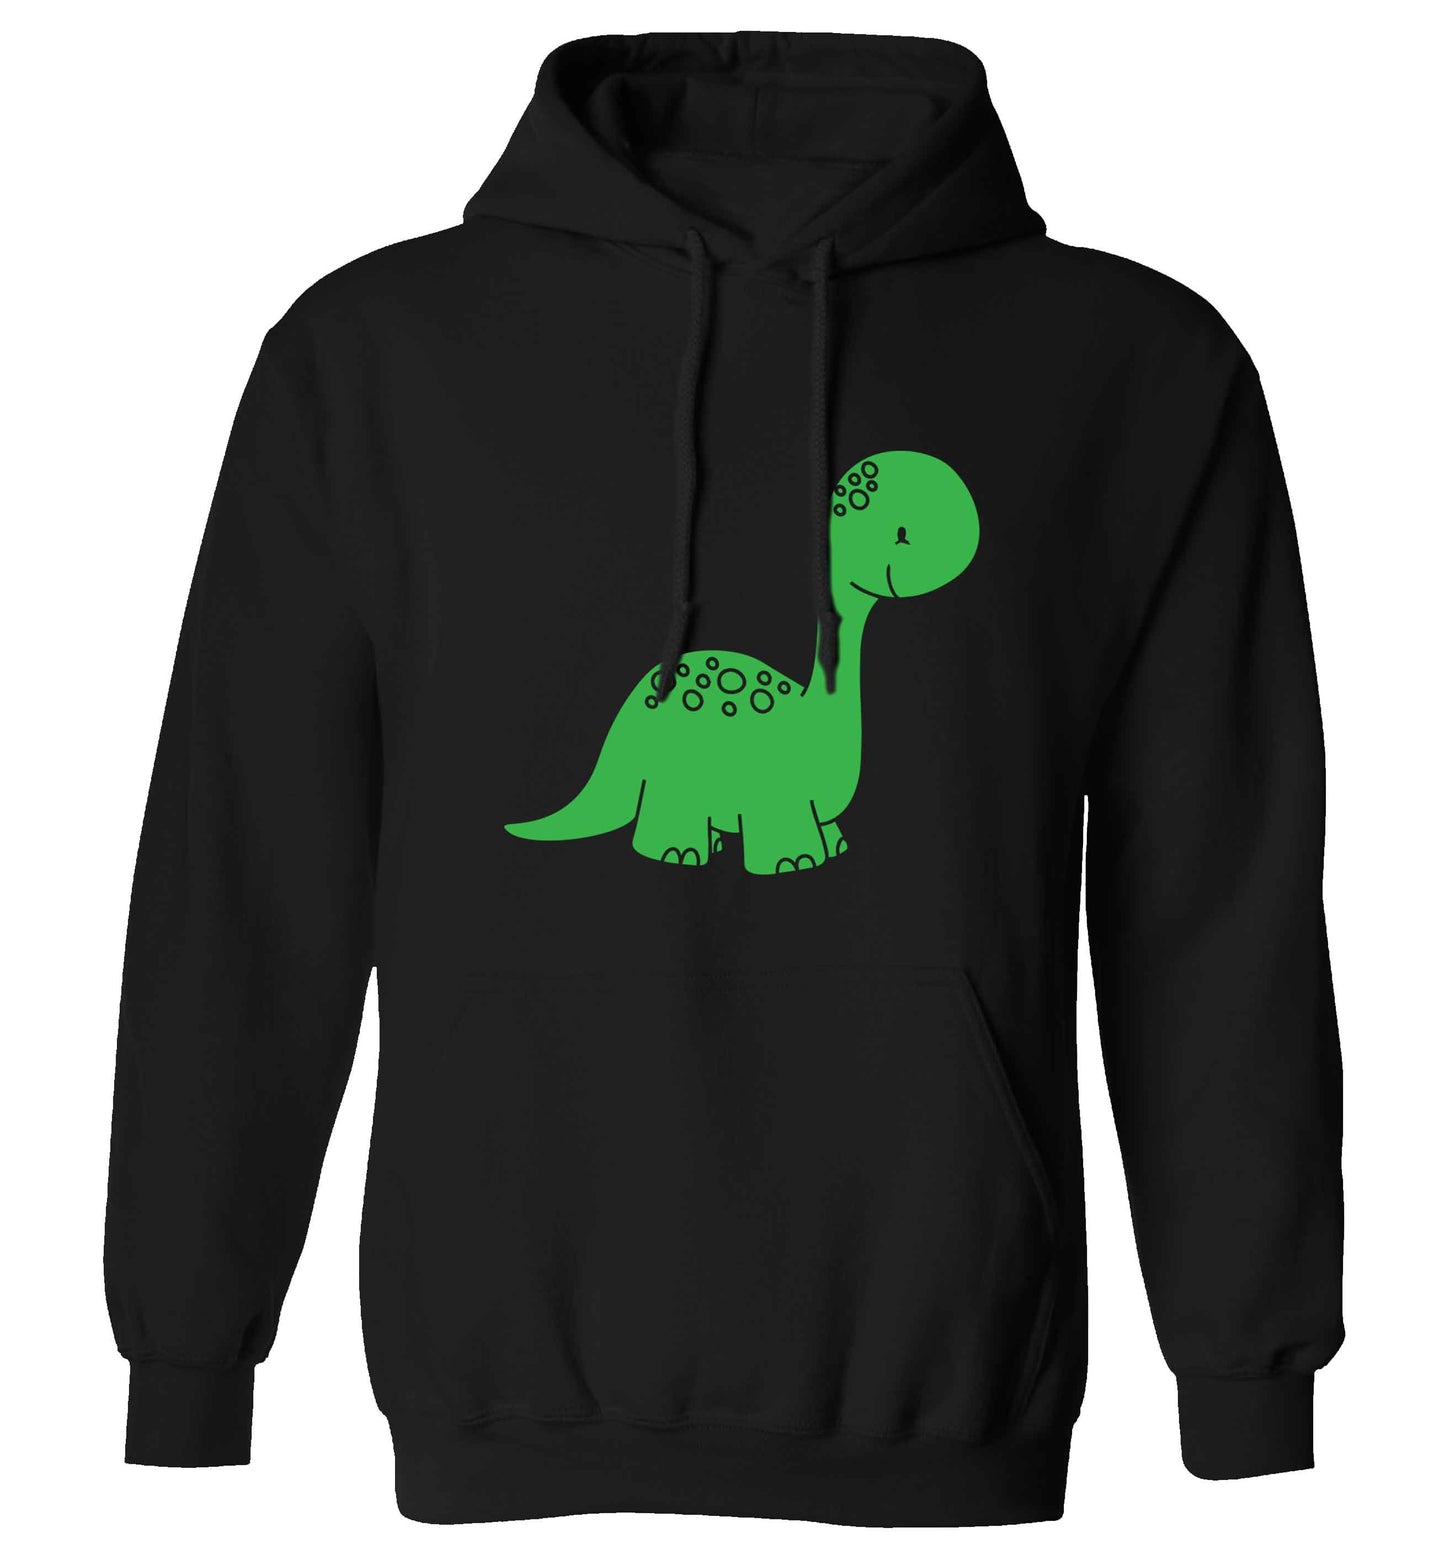 Dinosaur illustration adults unisex black hoodie 2XL